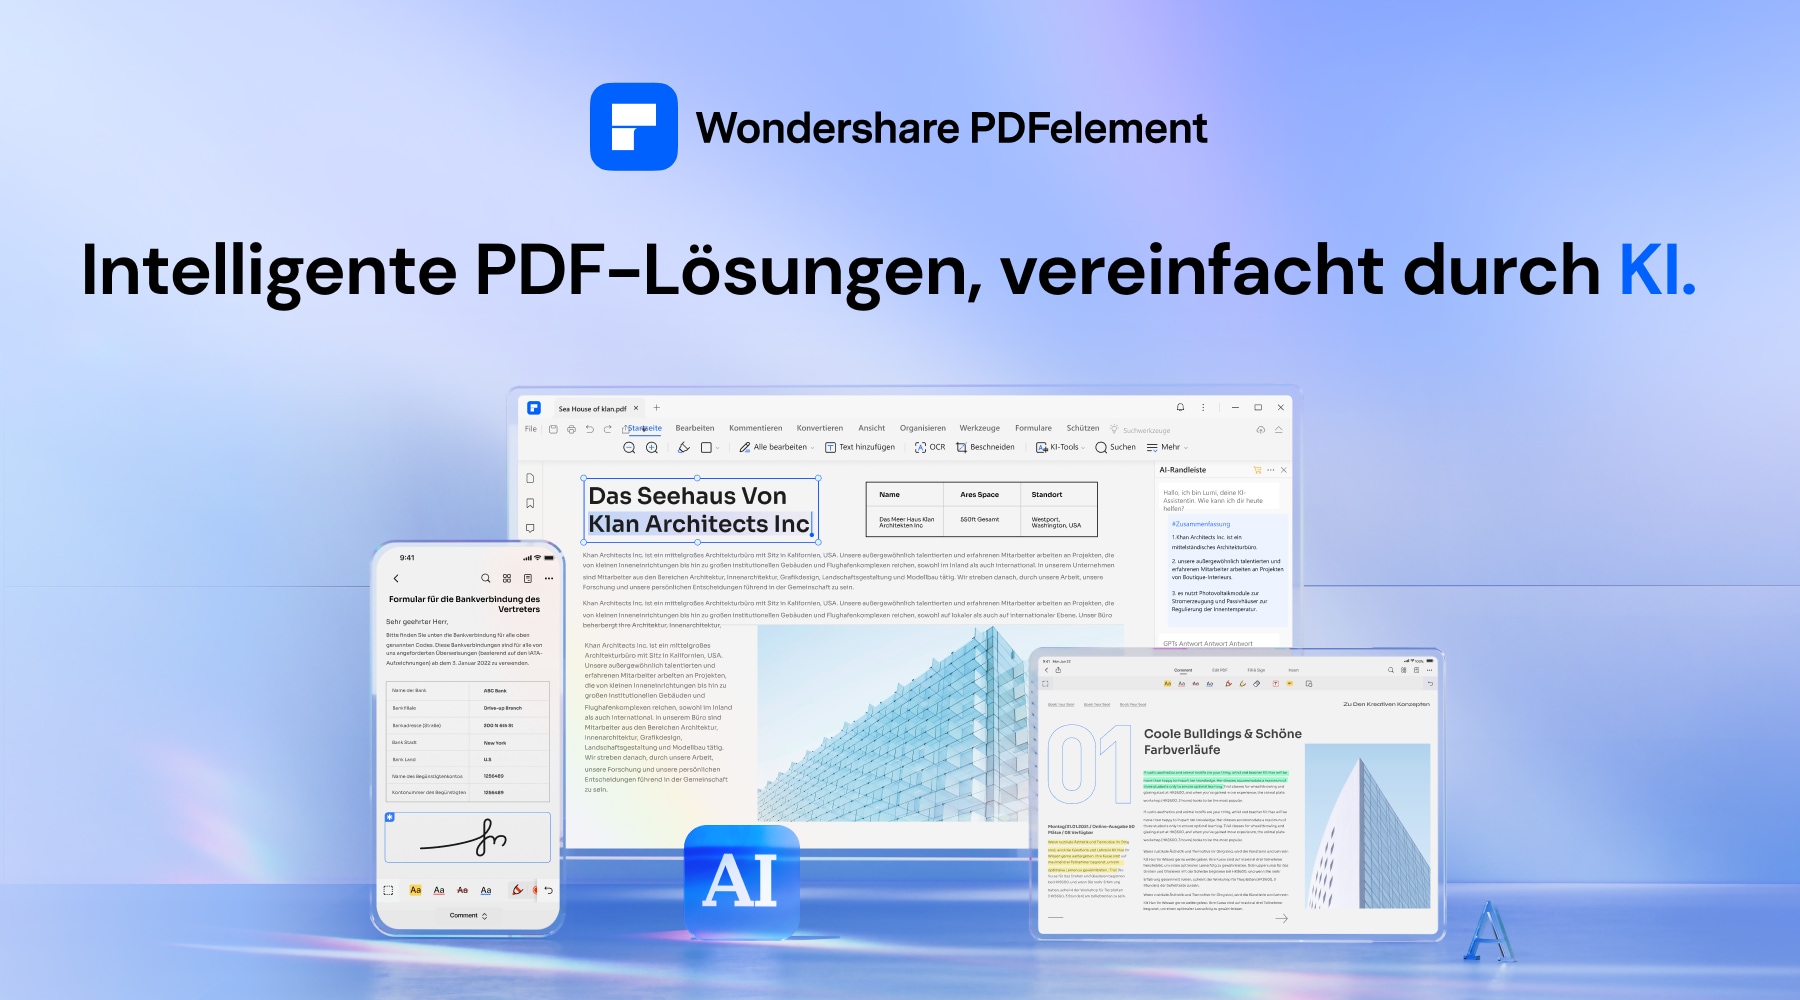 Wondershare PDFelement - Ihr KI PDF Tool zum Textkorrektur und Grammatikkorrektur jenseits jeglicher Vorstellungskraft.